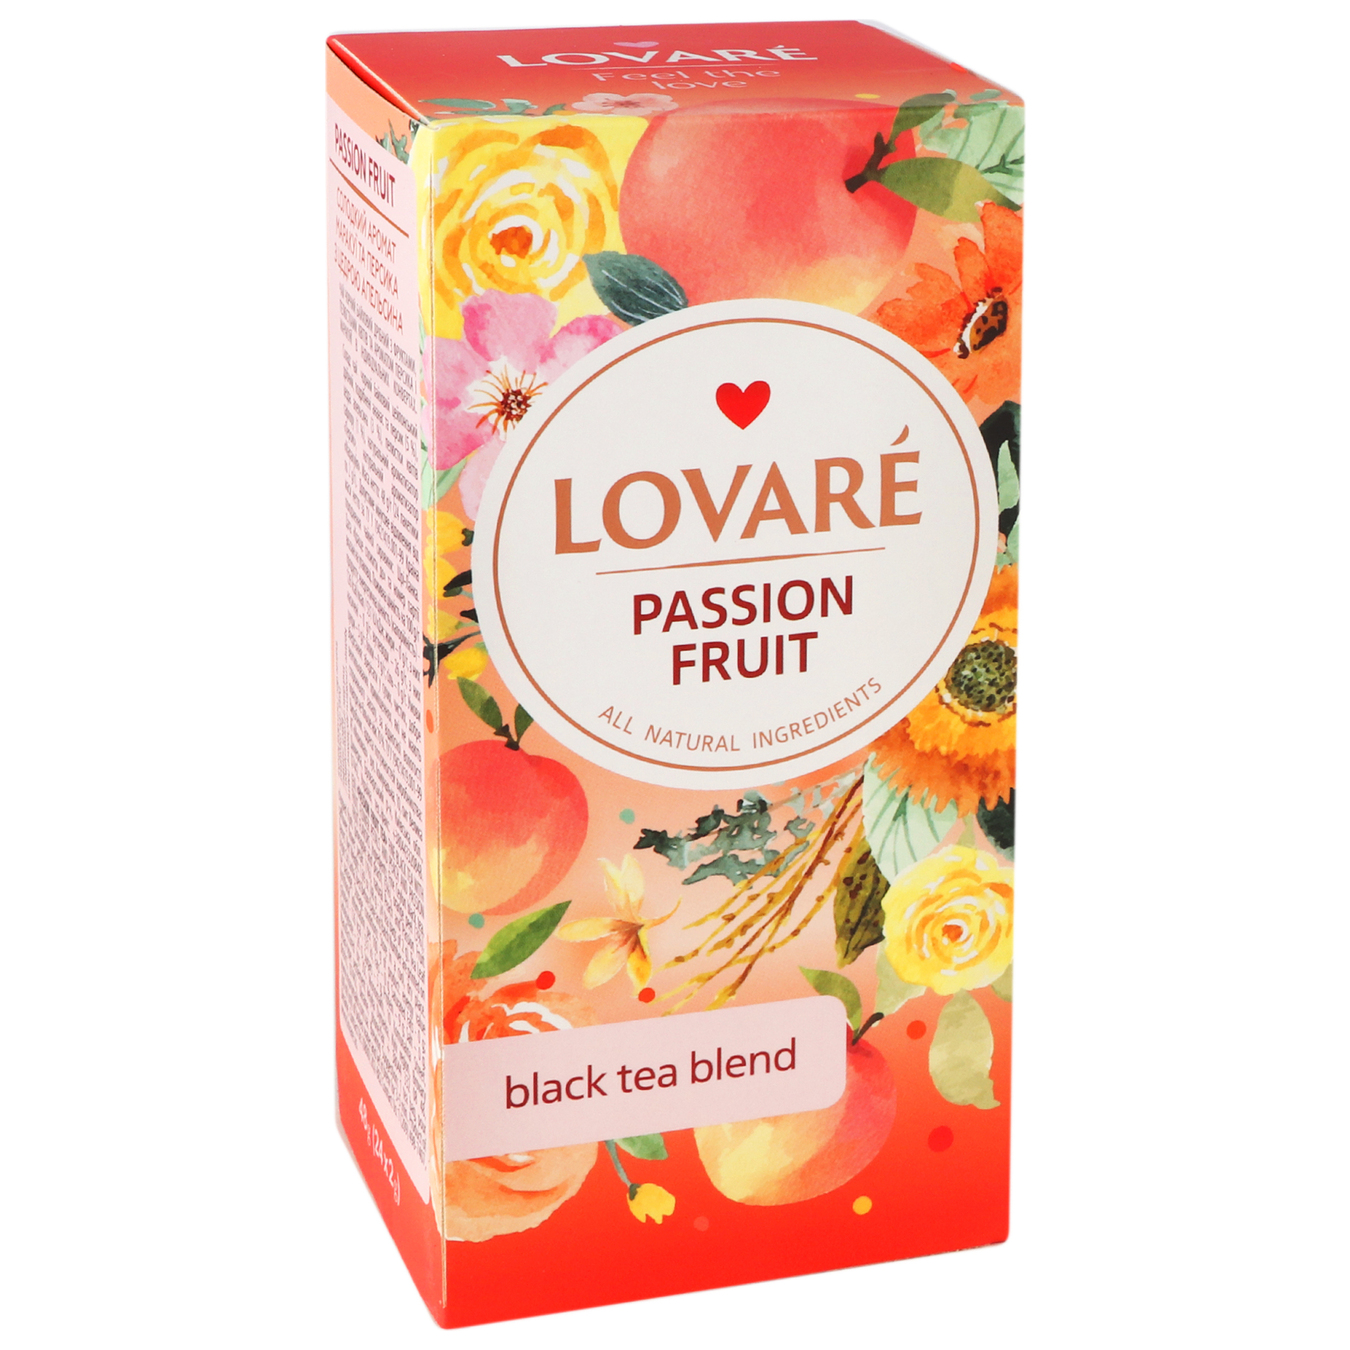 Lovare Passion fruit Black tea 24pcs 2g 5